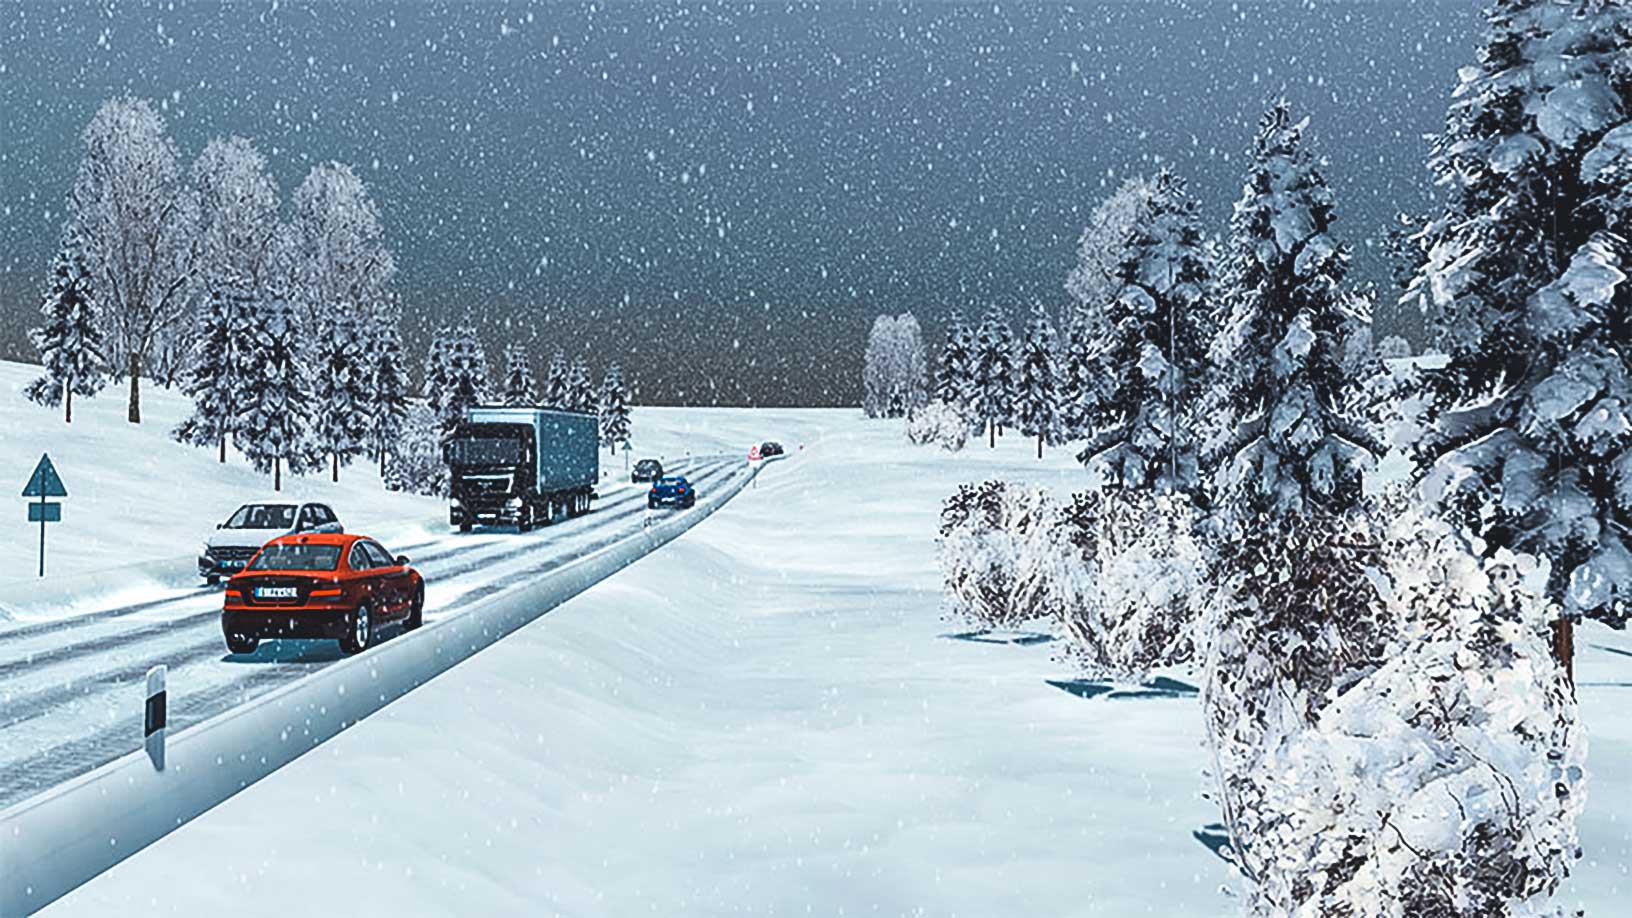 Simulation von Fahrzeugen, die unter kalten, schneereichen Bedingungen fahren 